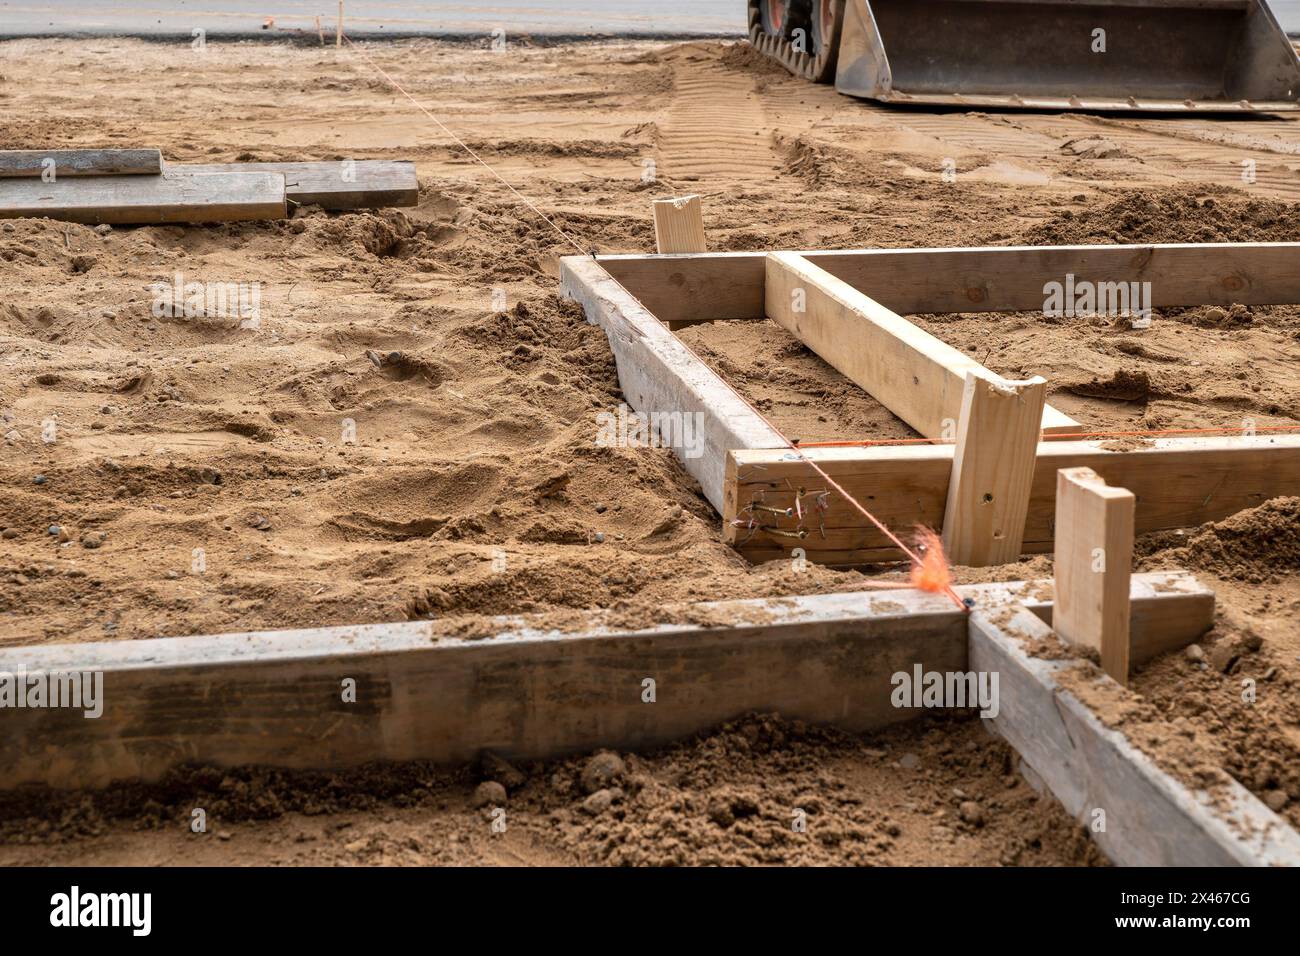 Eine Holzform zur Zementplatzierung im braunen Schmutz auf einer Baustelle. Zwei mal vier Bretter, Schnur, Schmutz und ein Frontlader. Stockfoto